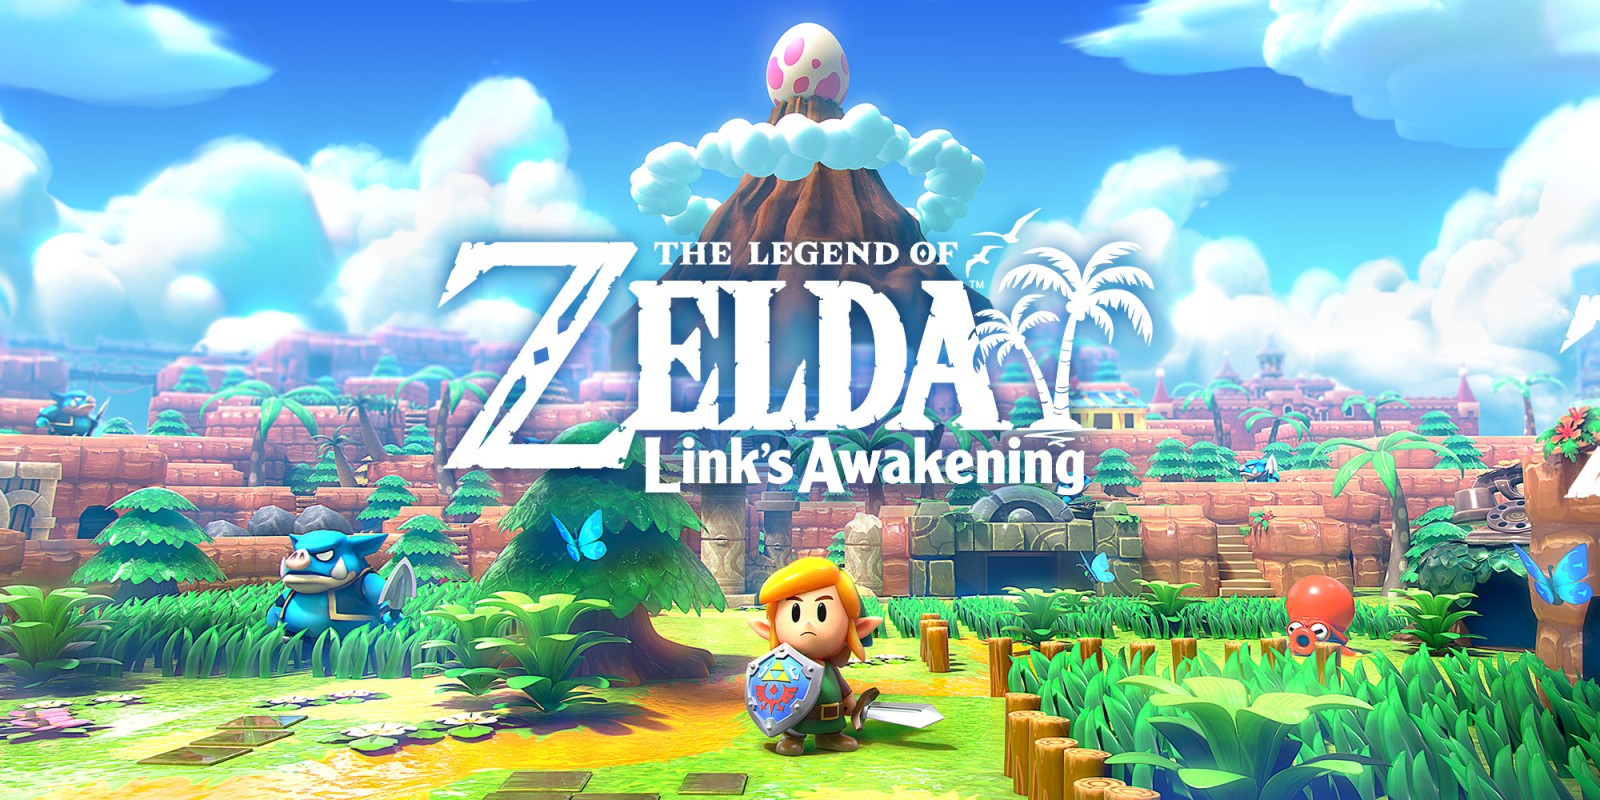 Zelda, Nintendo's